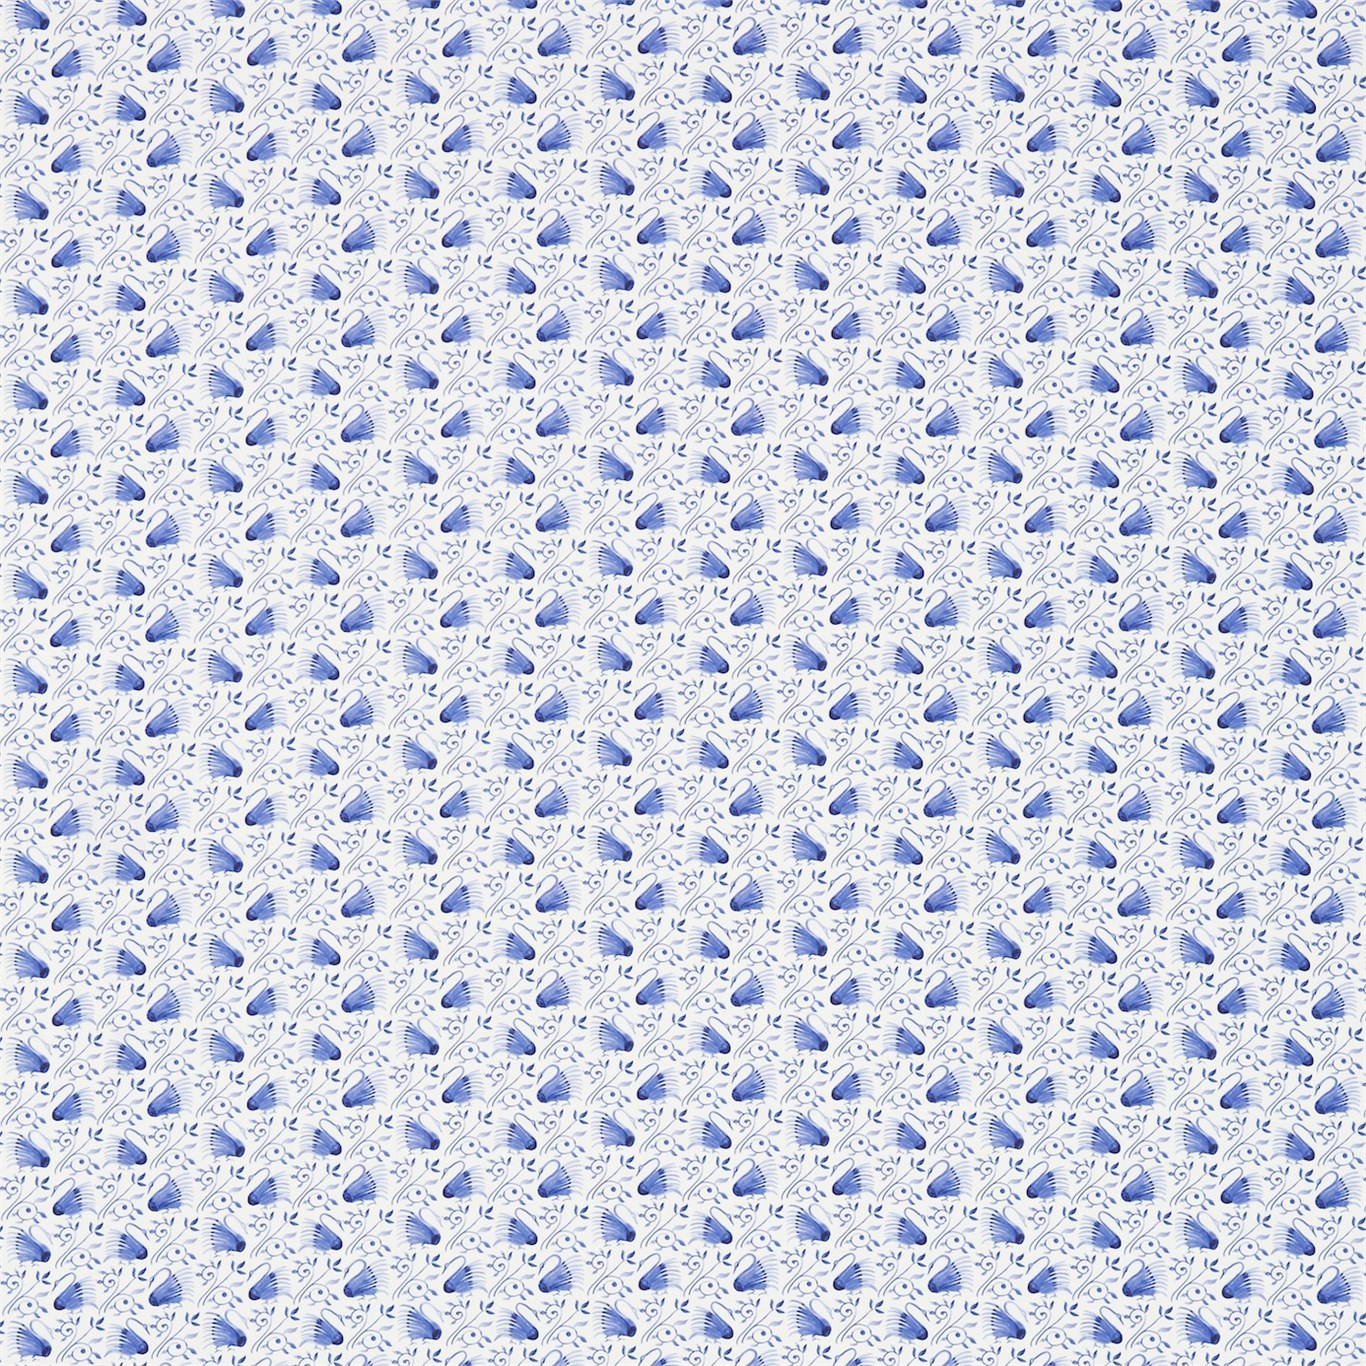 Swans Delft Blue Fabric | Morris & Co by Sanderson Design